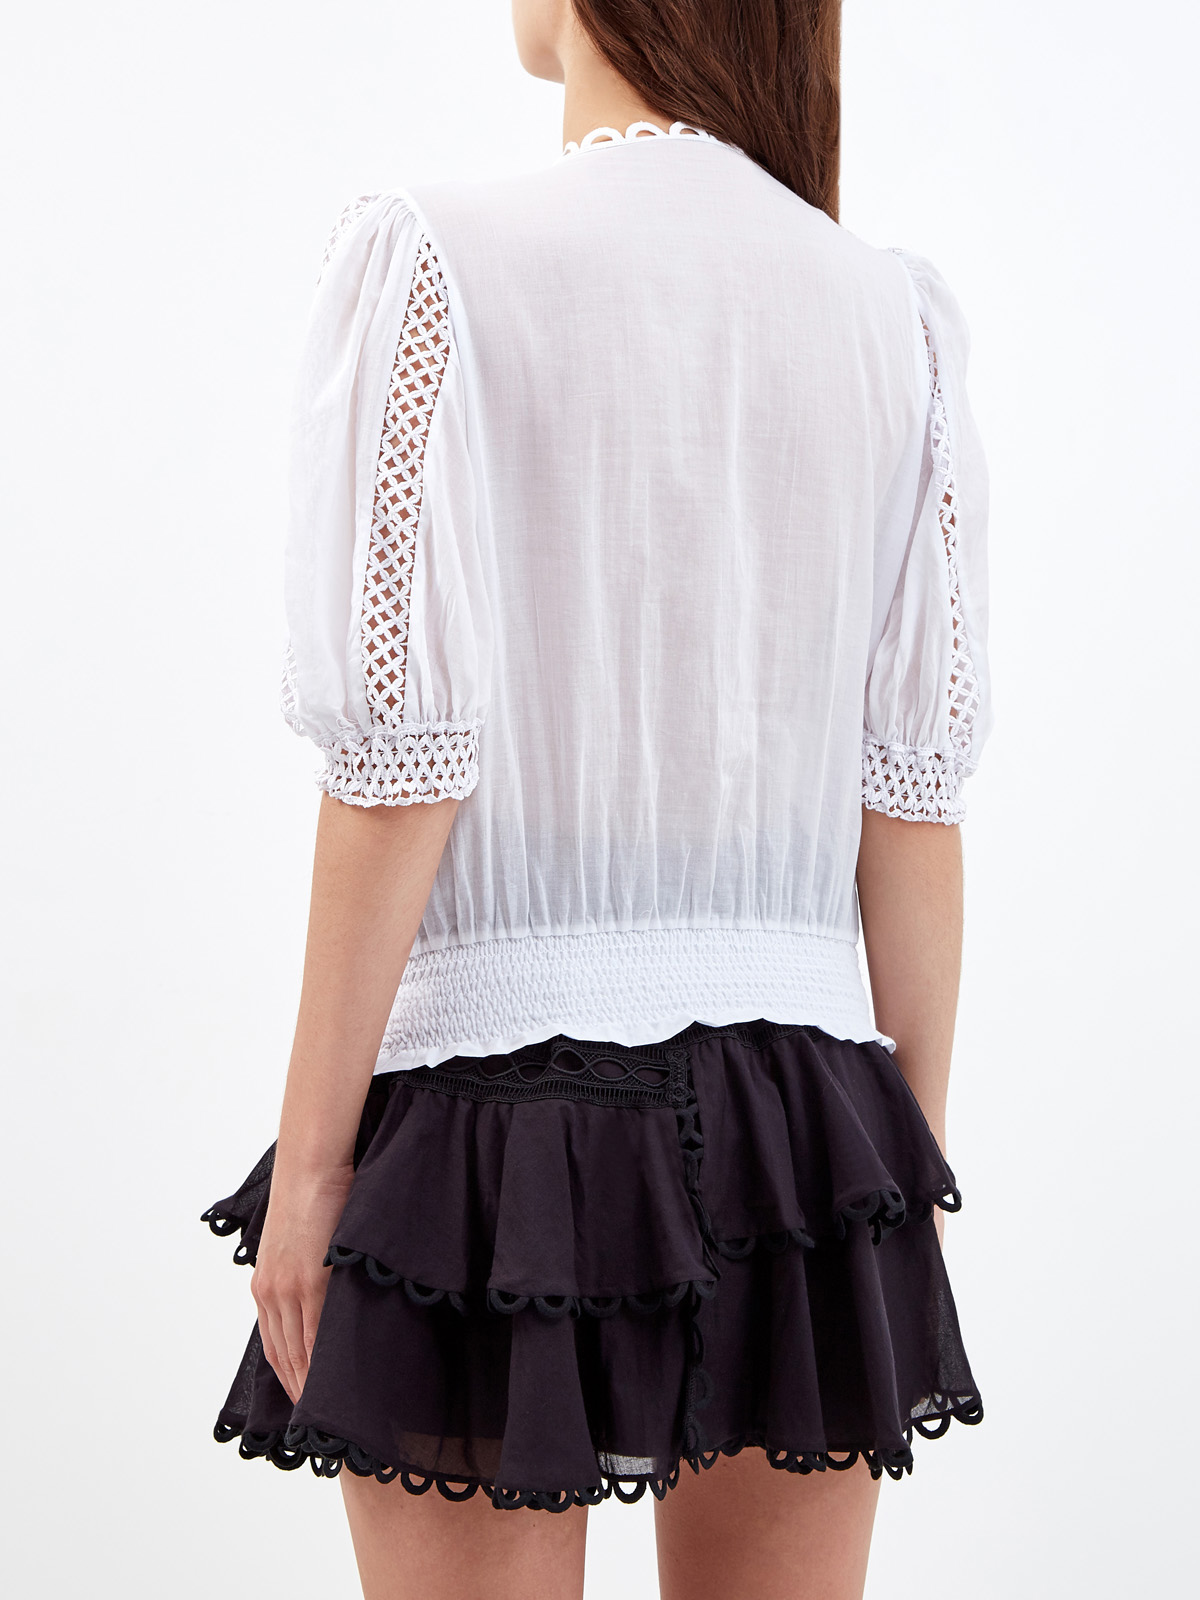 Легкая блуза Estela с ажурной вышивкой в тон CHARO RUIZ IBIZA, цвет белый, размер S;M;L;XL - фото 4